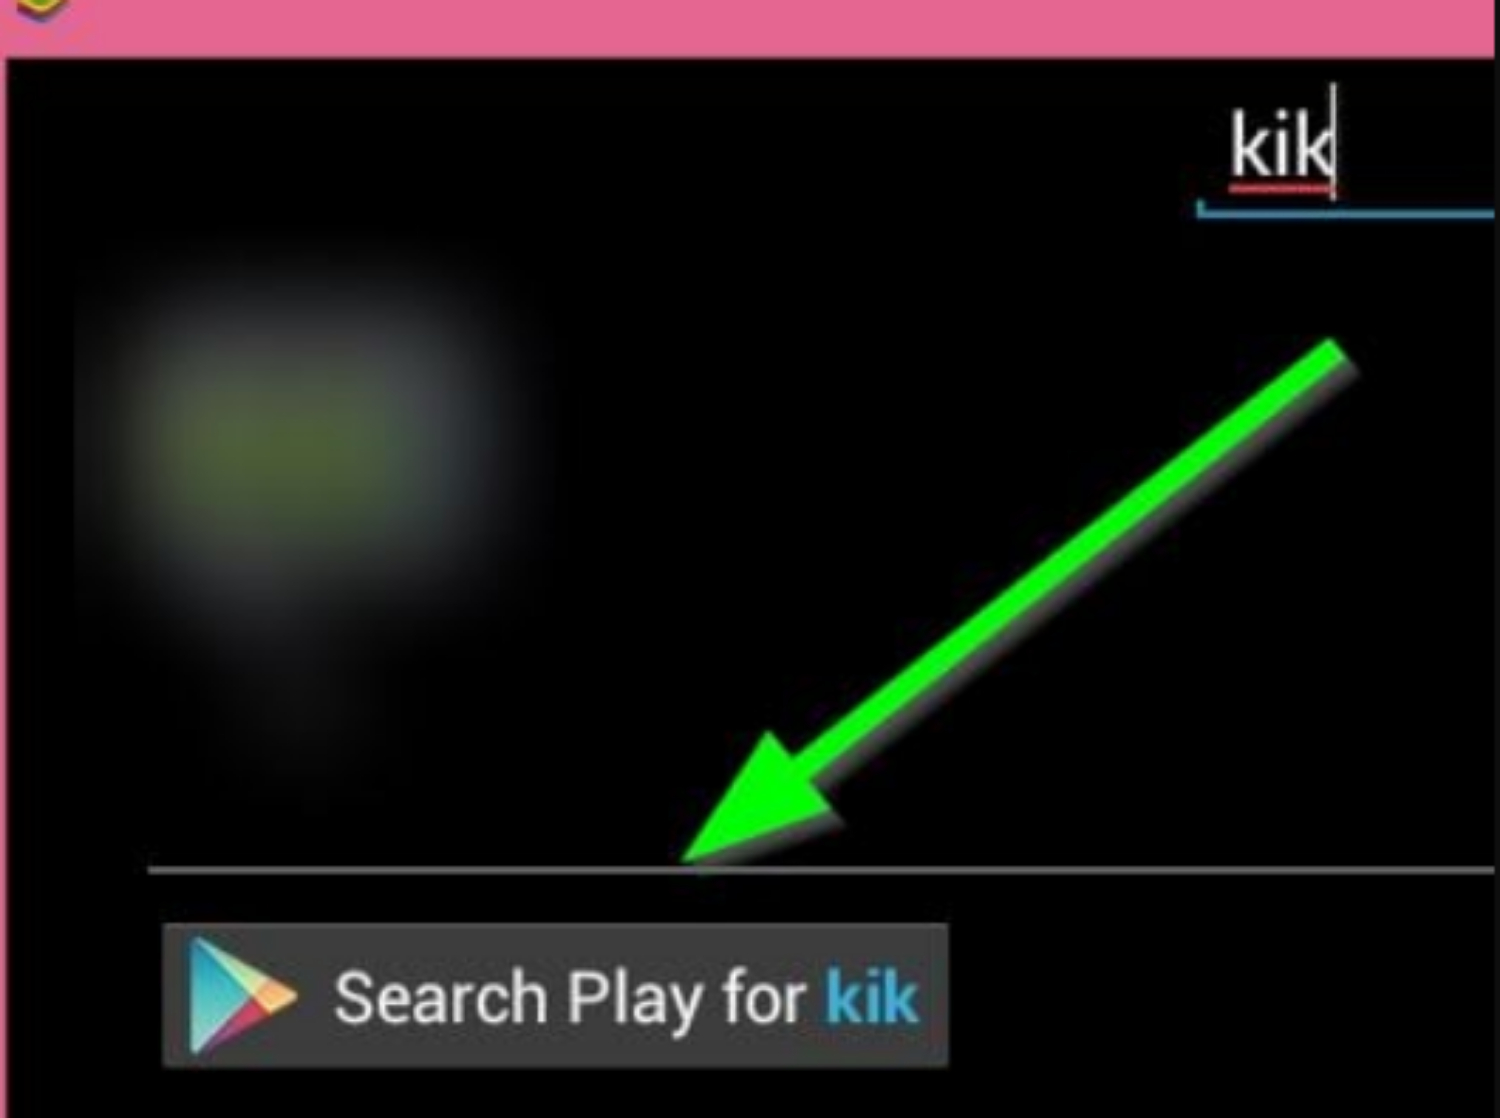 search play for kik